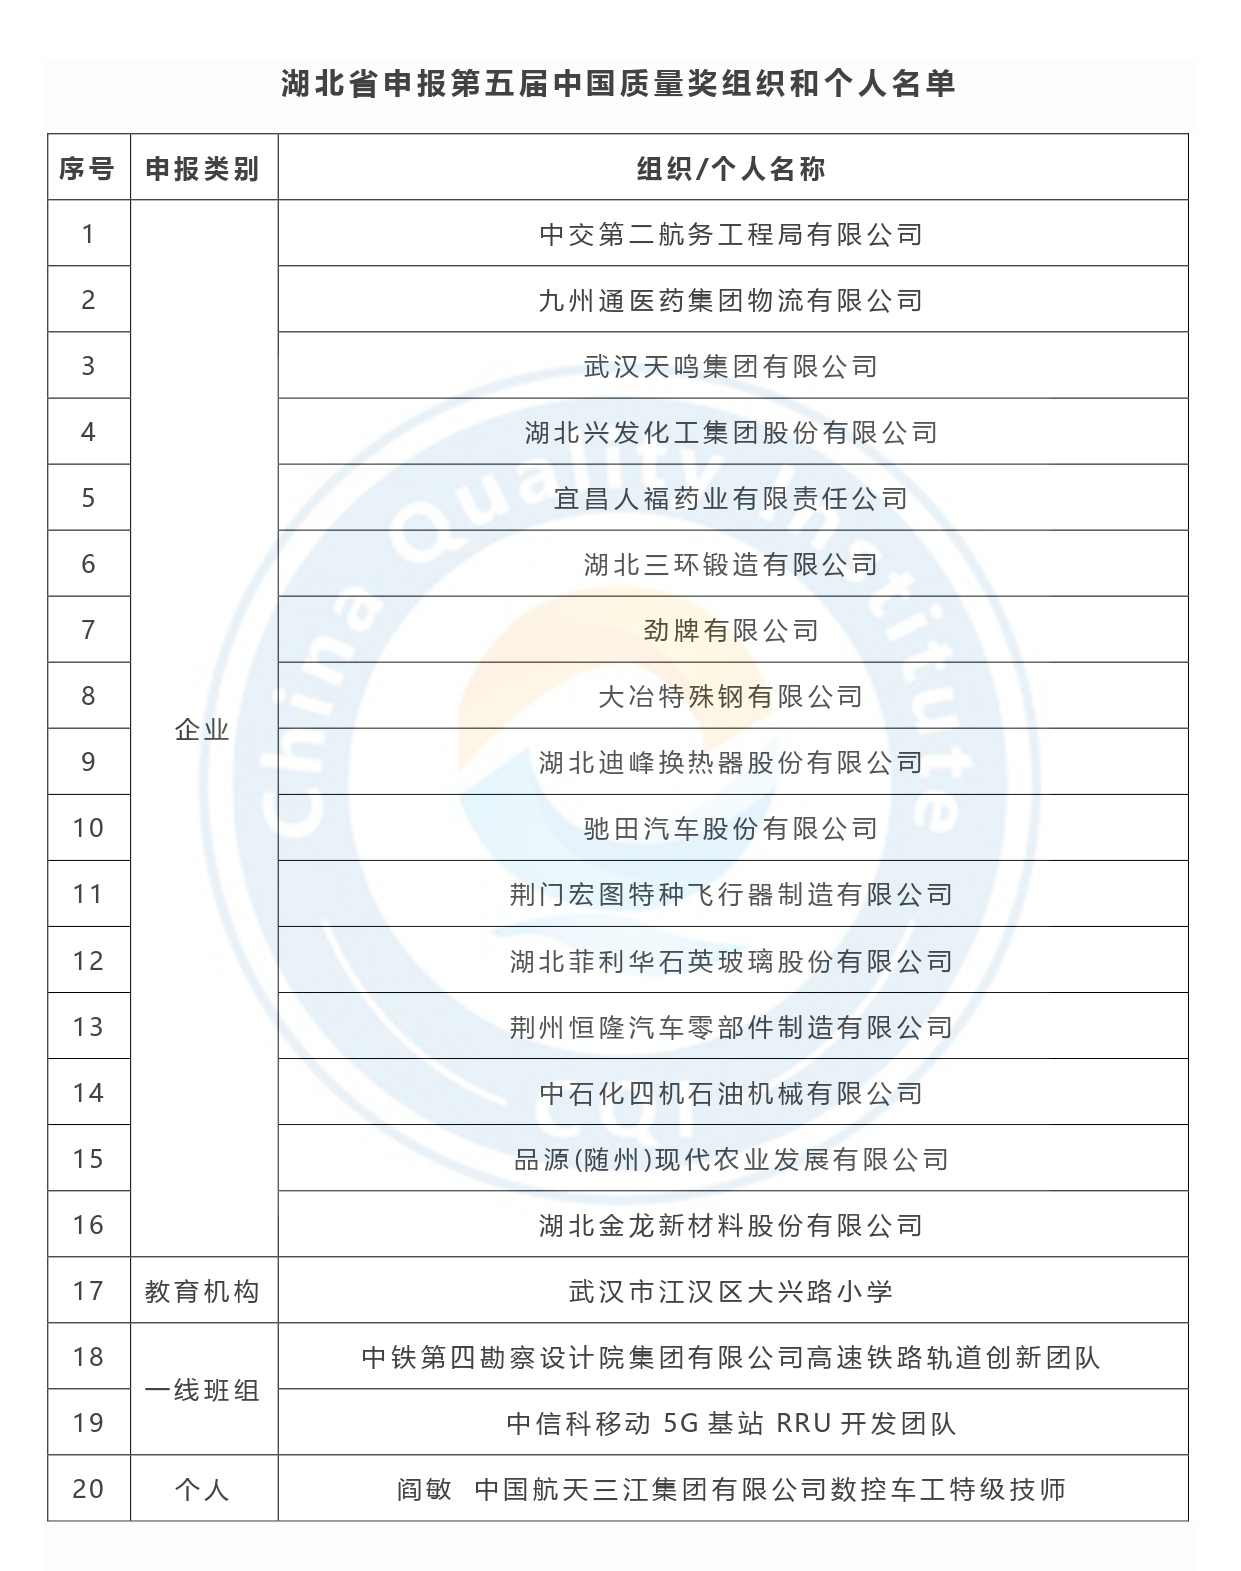 第五届中国质量奖申报名单公示-湖北省.jpg